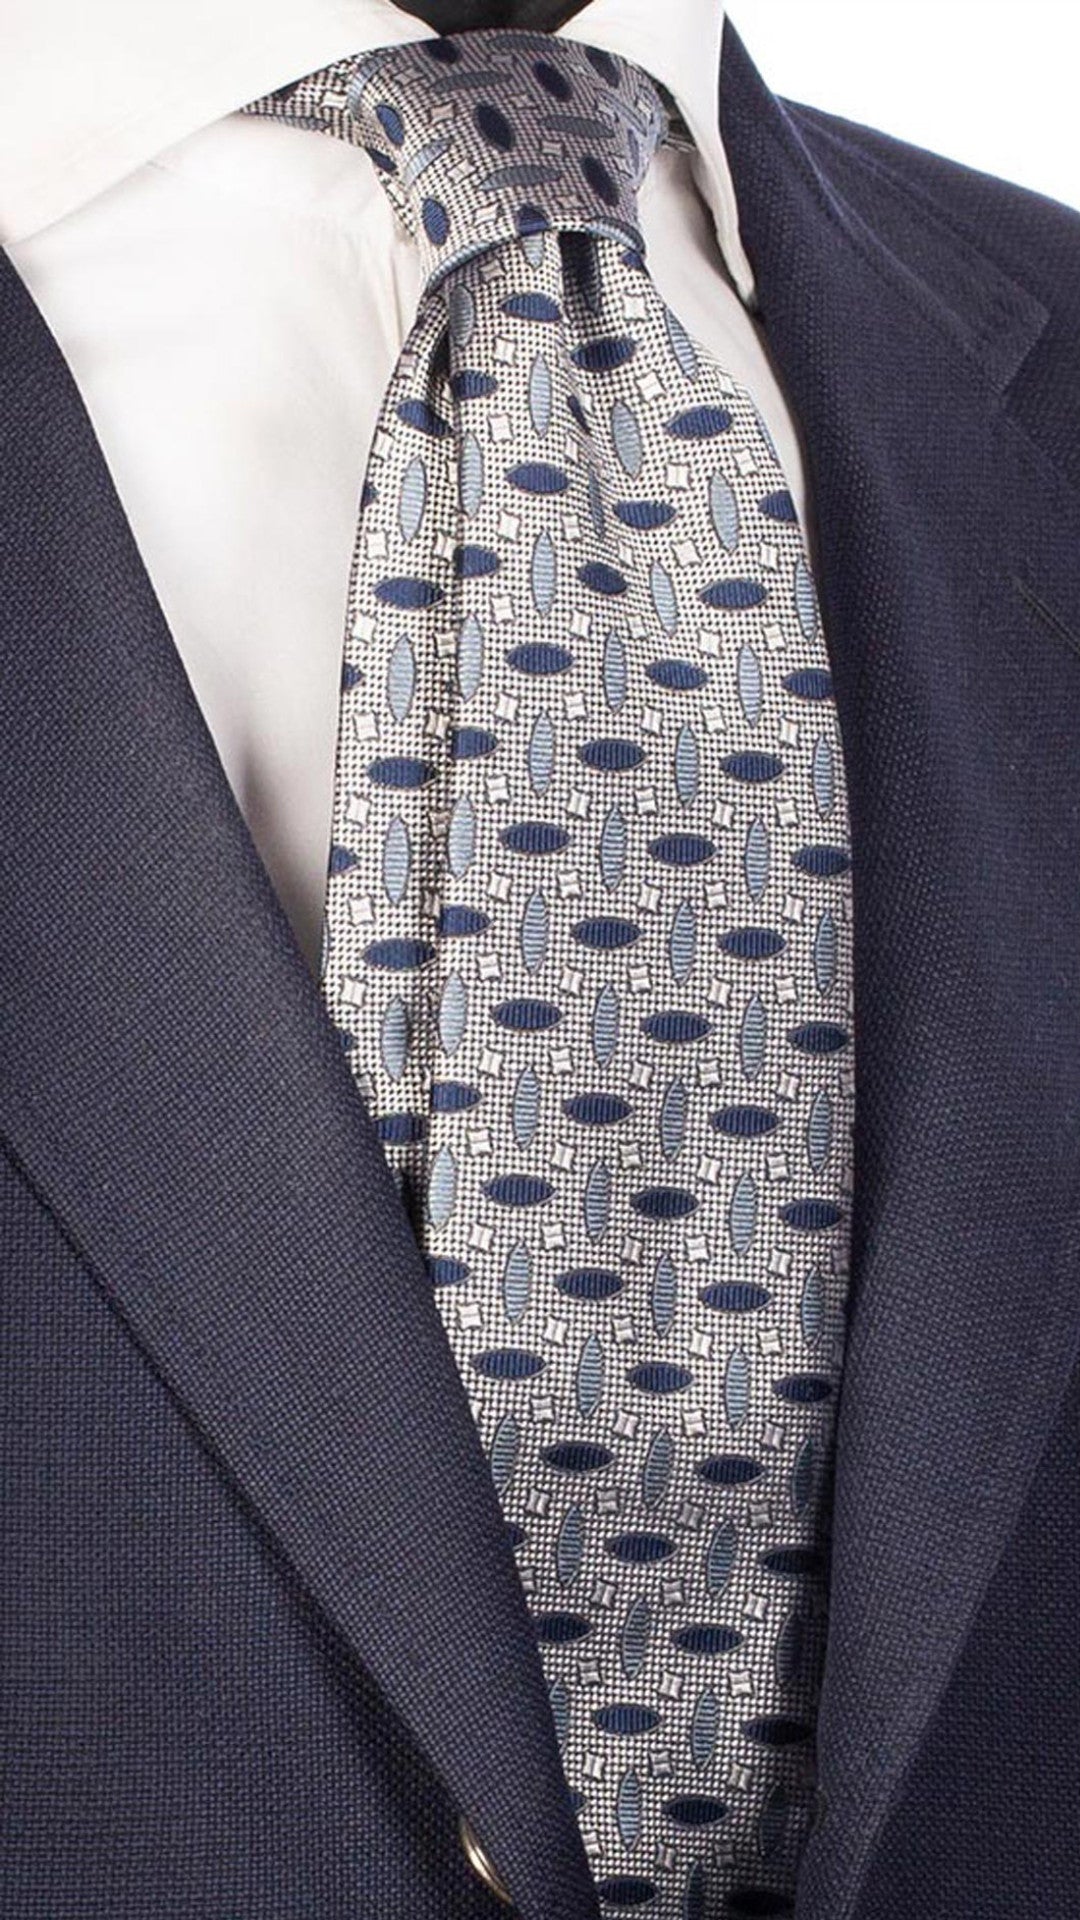 Cravatta da Cerimonia di Seta Blu Fantasia Grigio Nuvola CY3438 Made in Italy Graffeo Cravatte